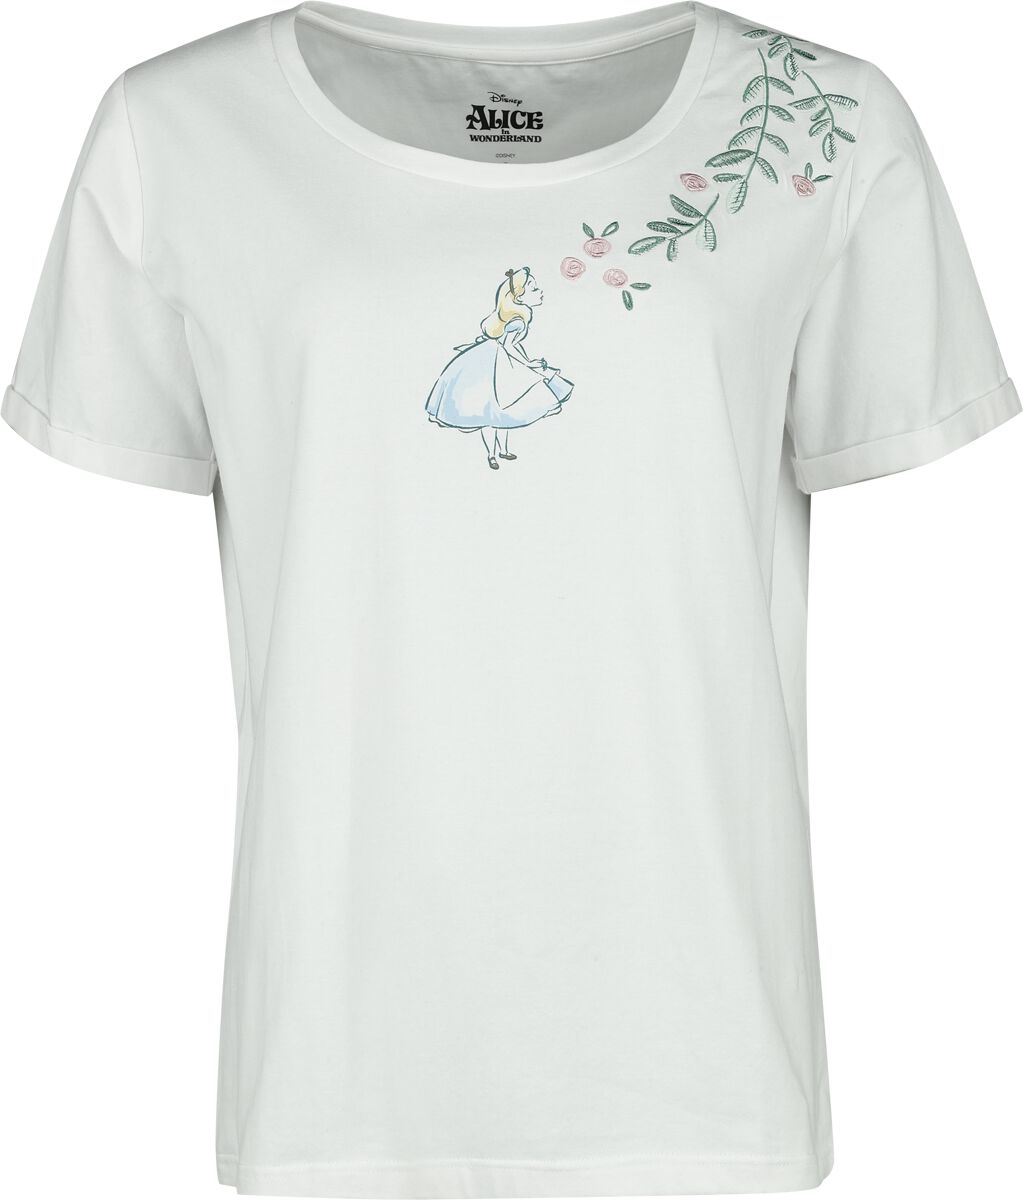 Alice im Wunderland - Disney T-Shirt - Alice With Roses - S bis XXL - für Damen - Größe XXL - weiß  - EMP exklusives Merchandise!